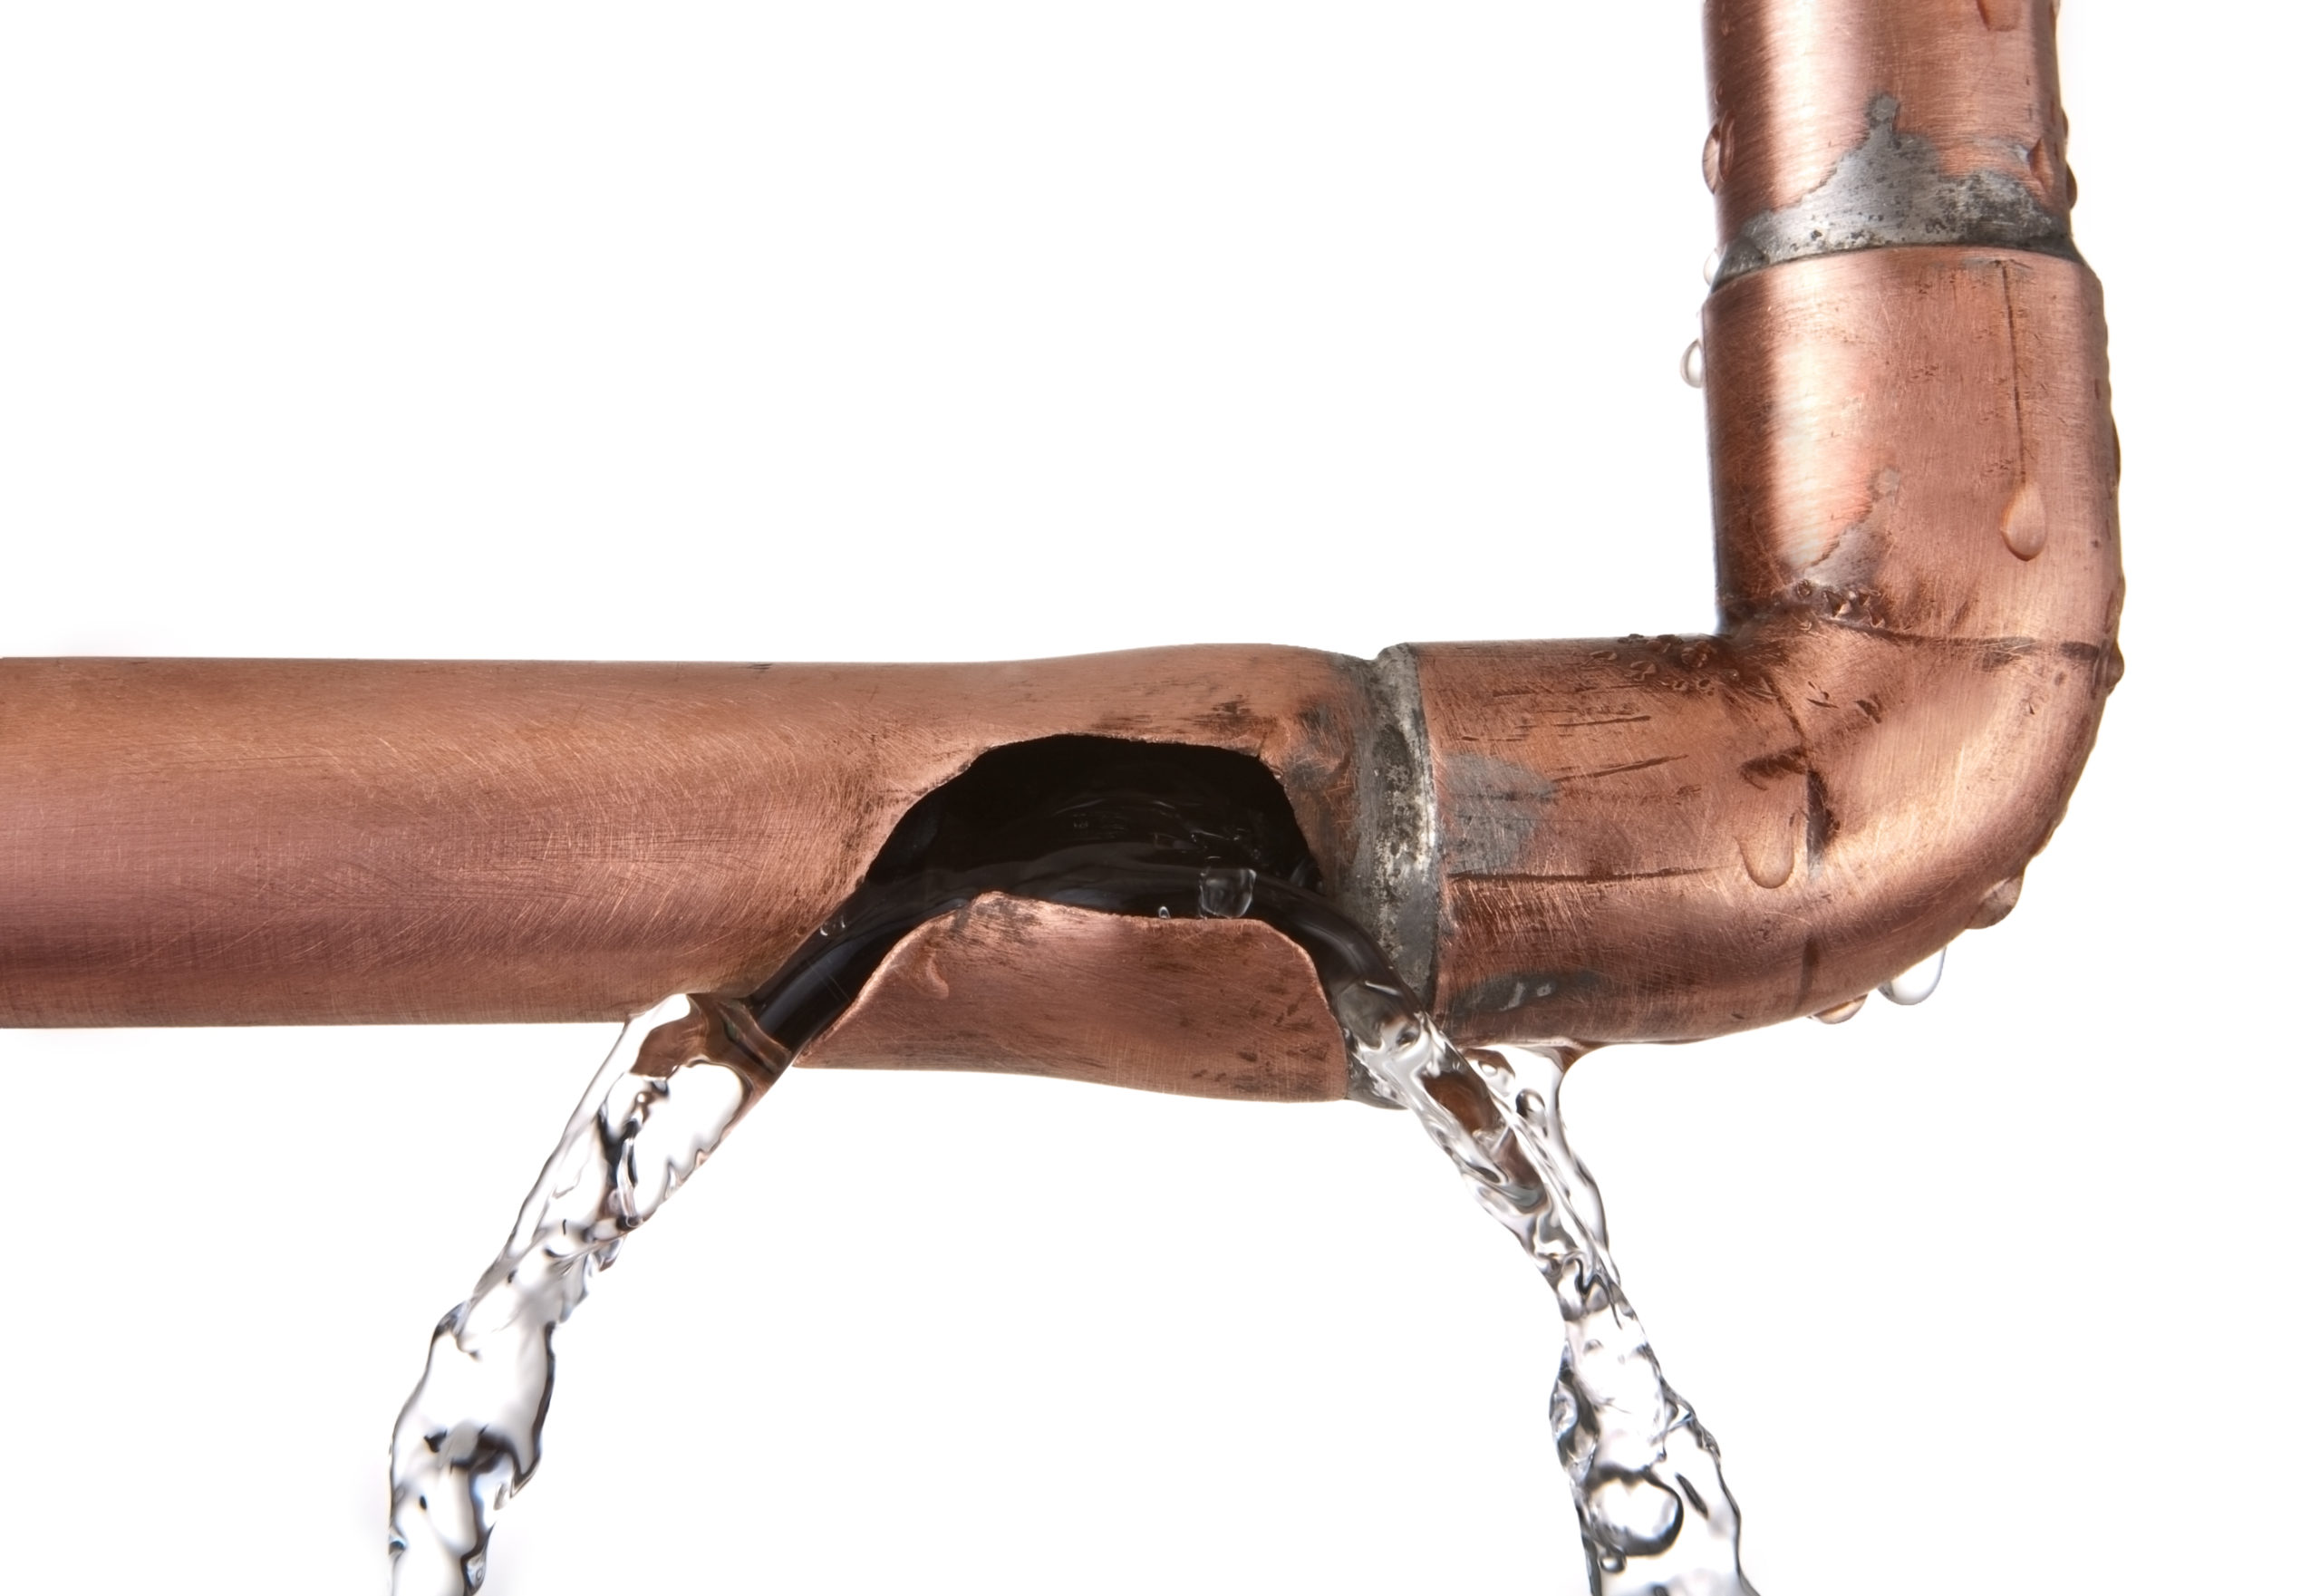 Reparatur von undichten Wasserleitungen in Wänden - Wissen